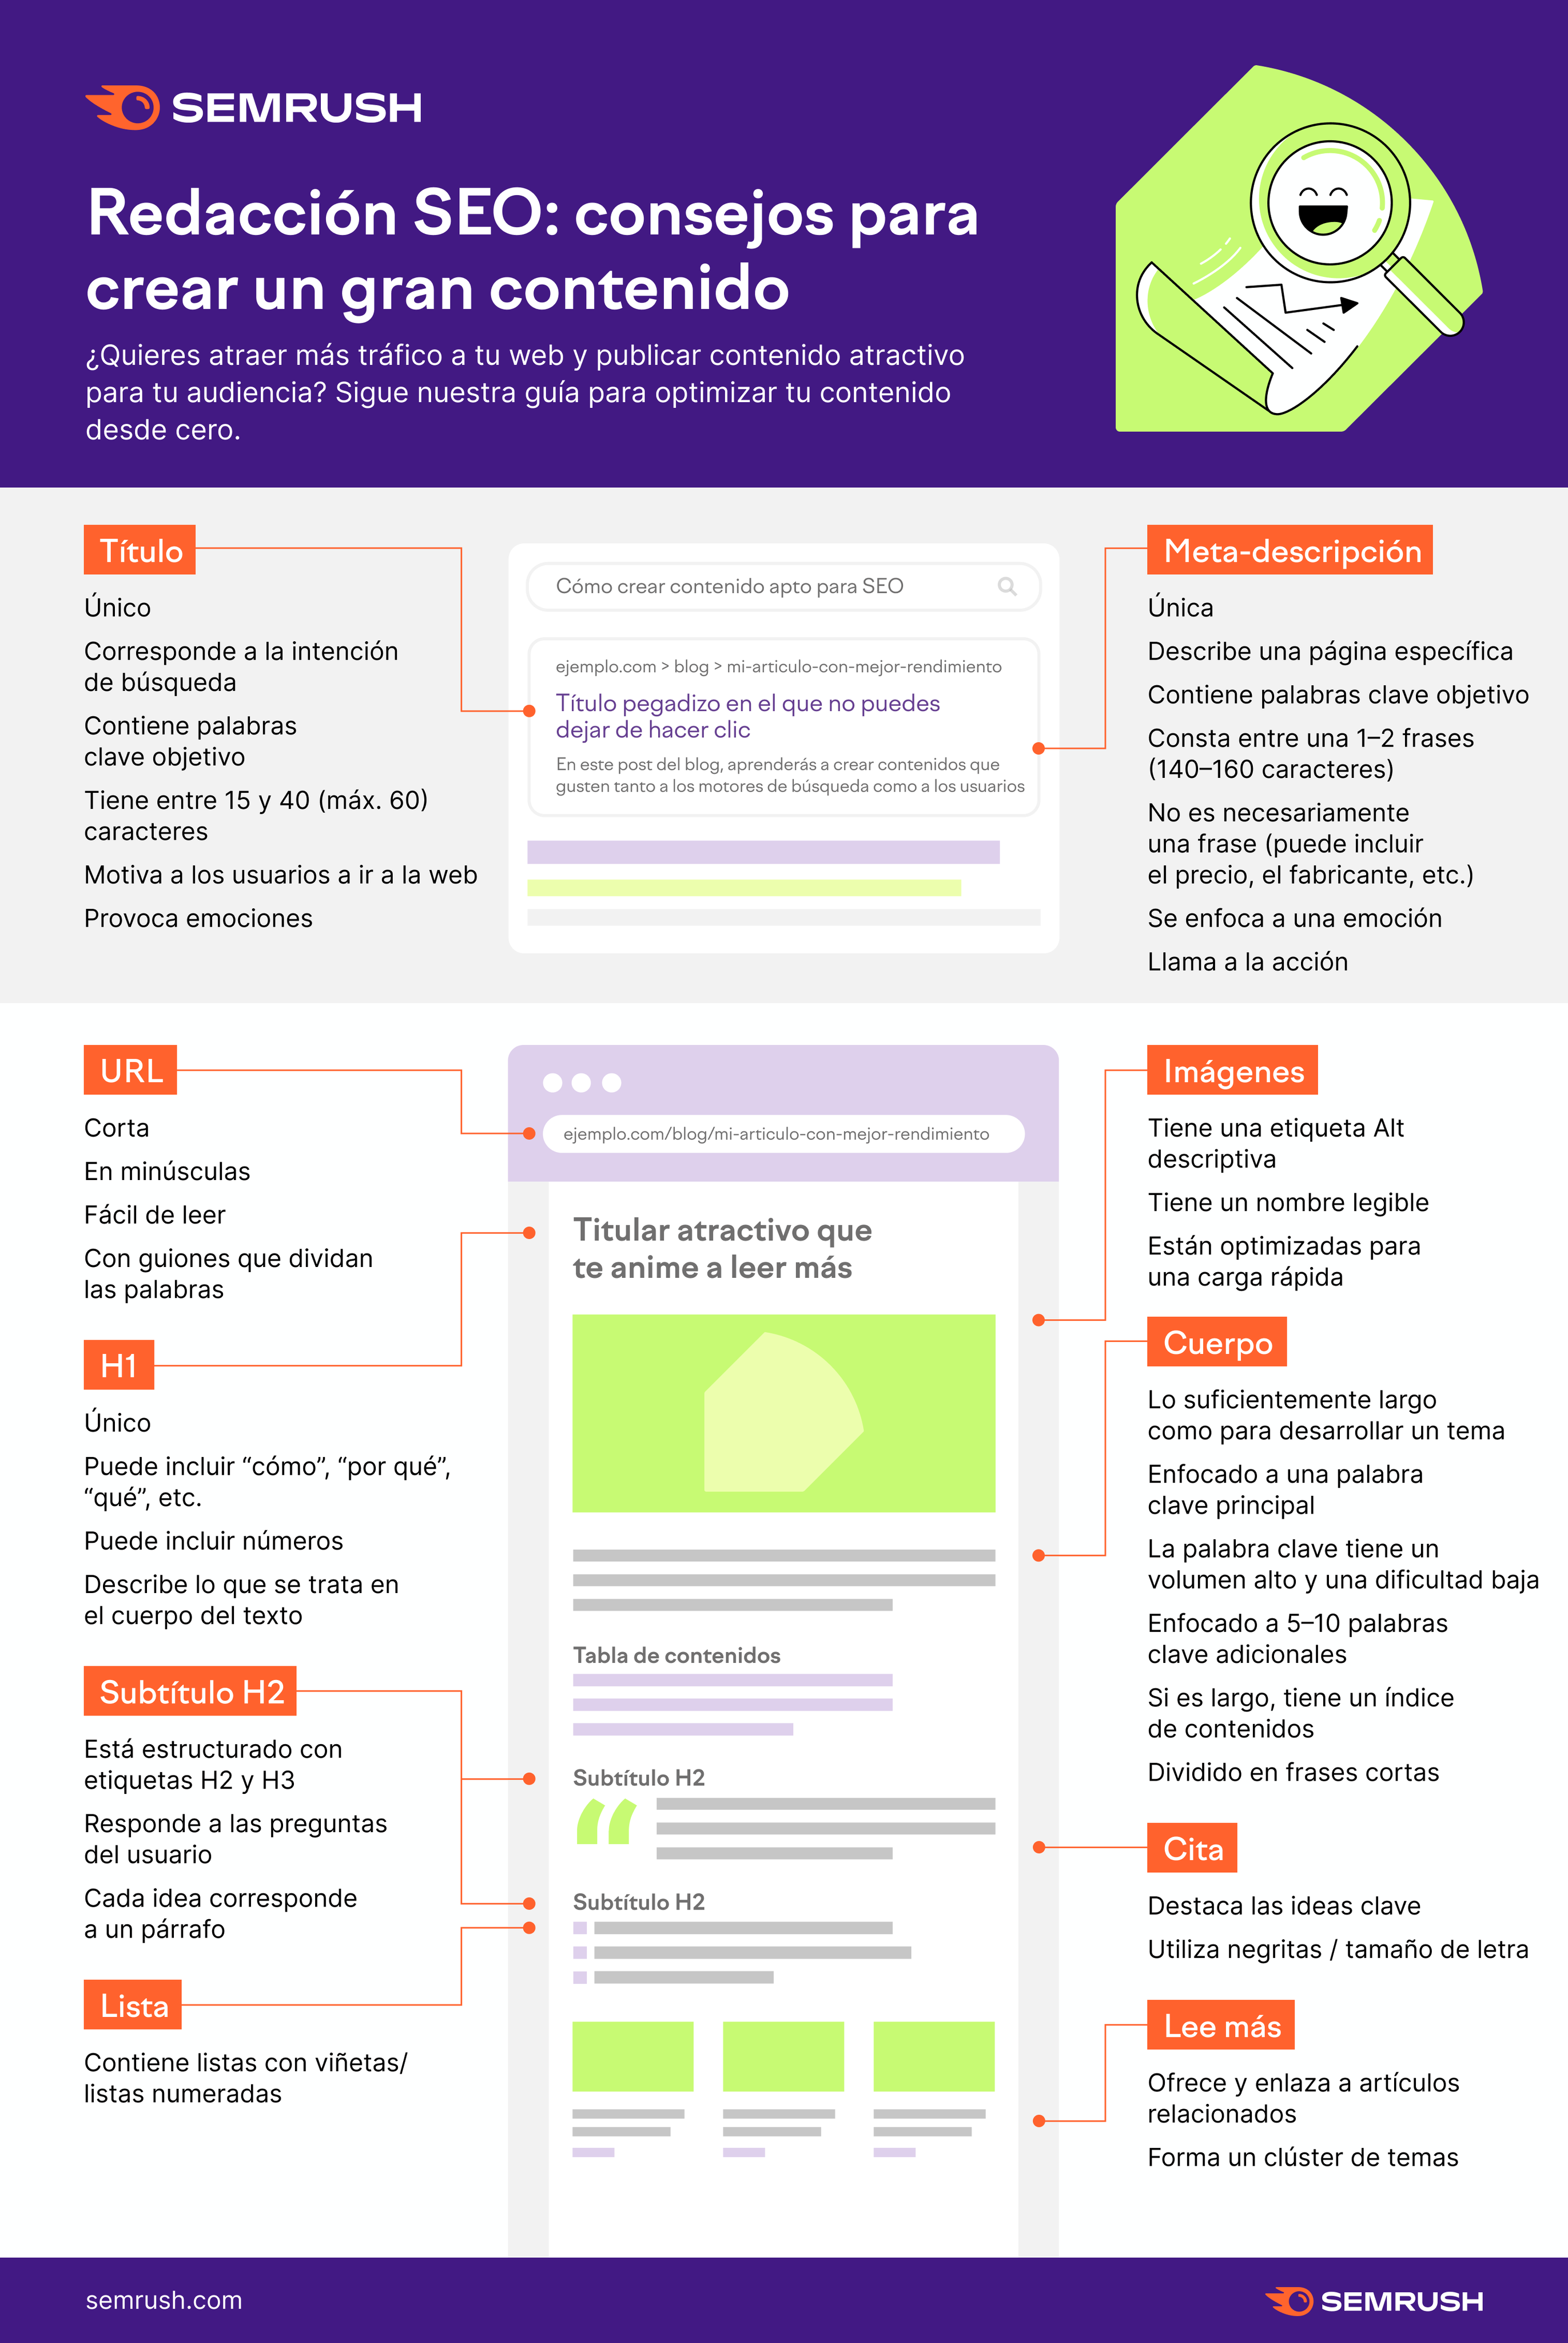 Redacción SEO: consejos para crear un gran contenido #infografia #infographic #seo